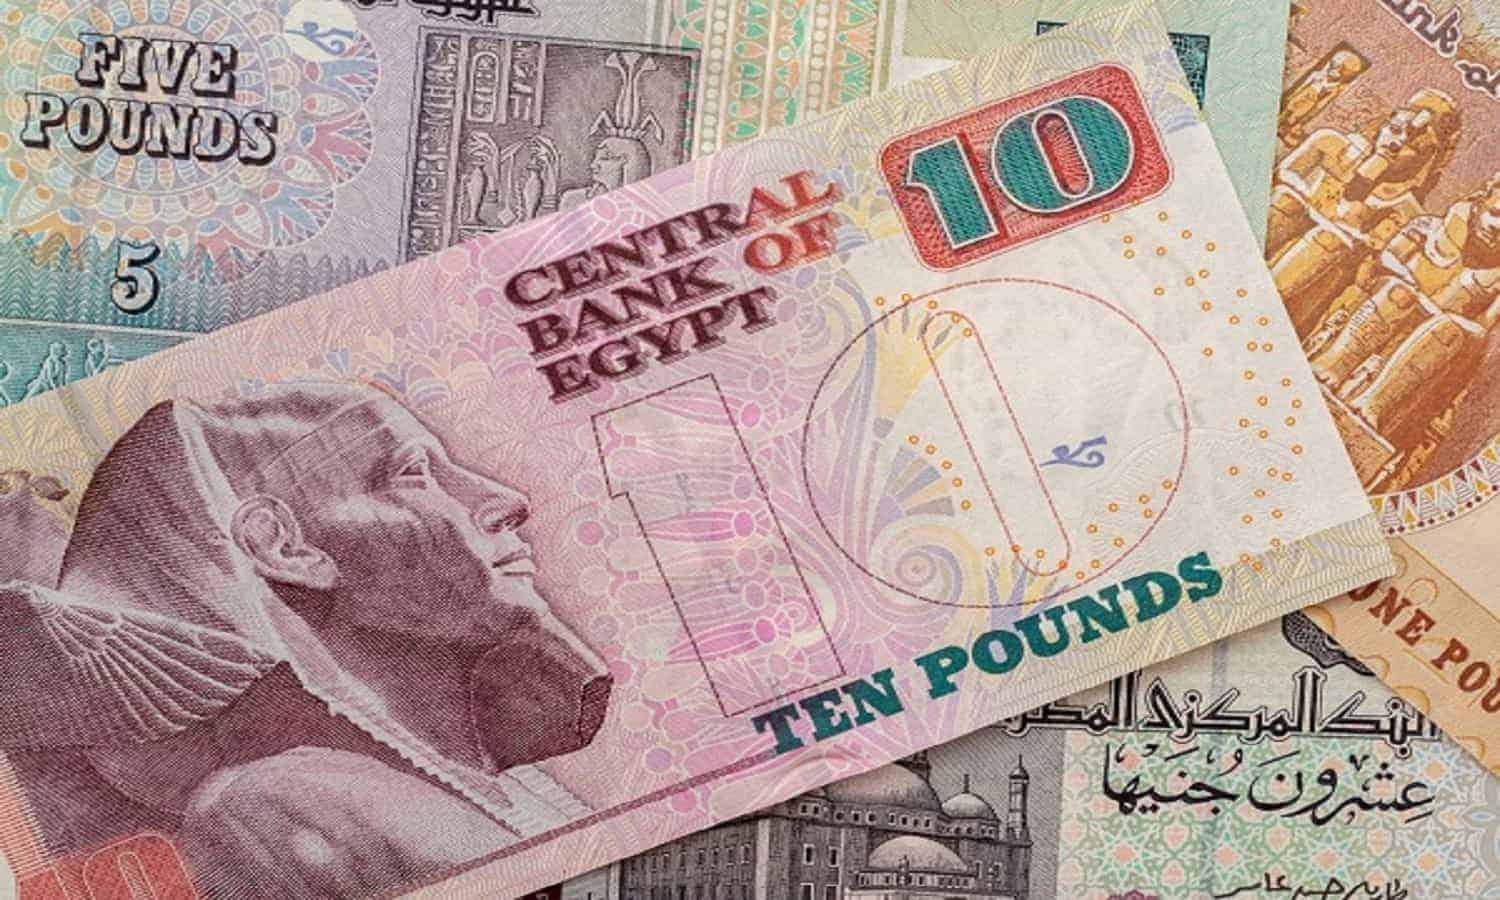 إدارة بنك البركة  تقترح توزيع كوبون نقدي بـ 1.03 جنيهًا
